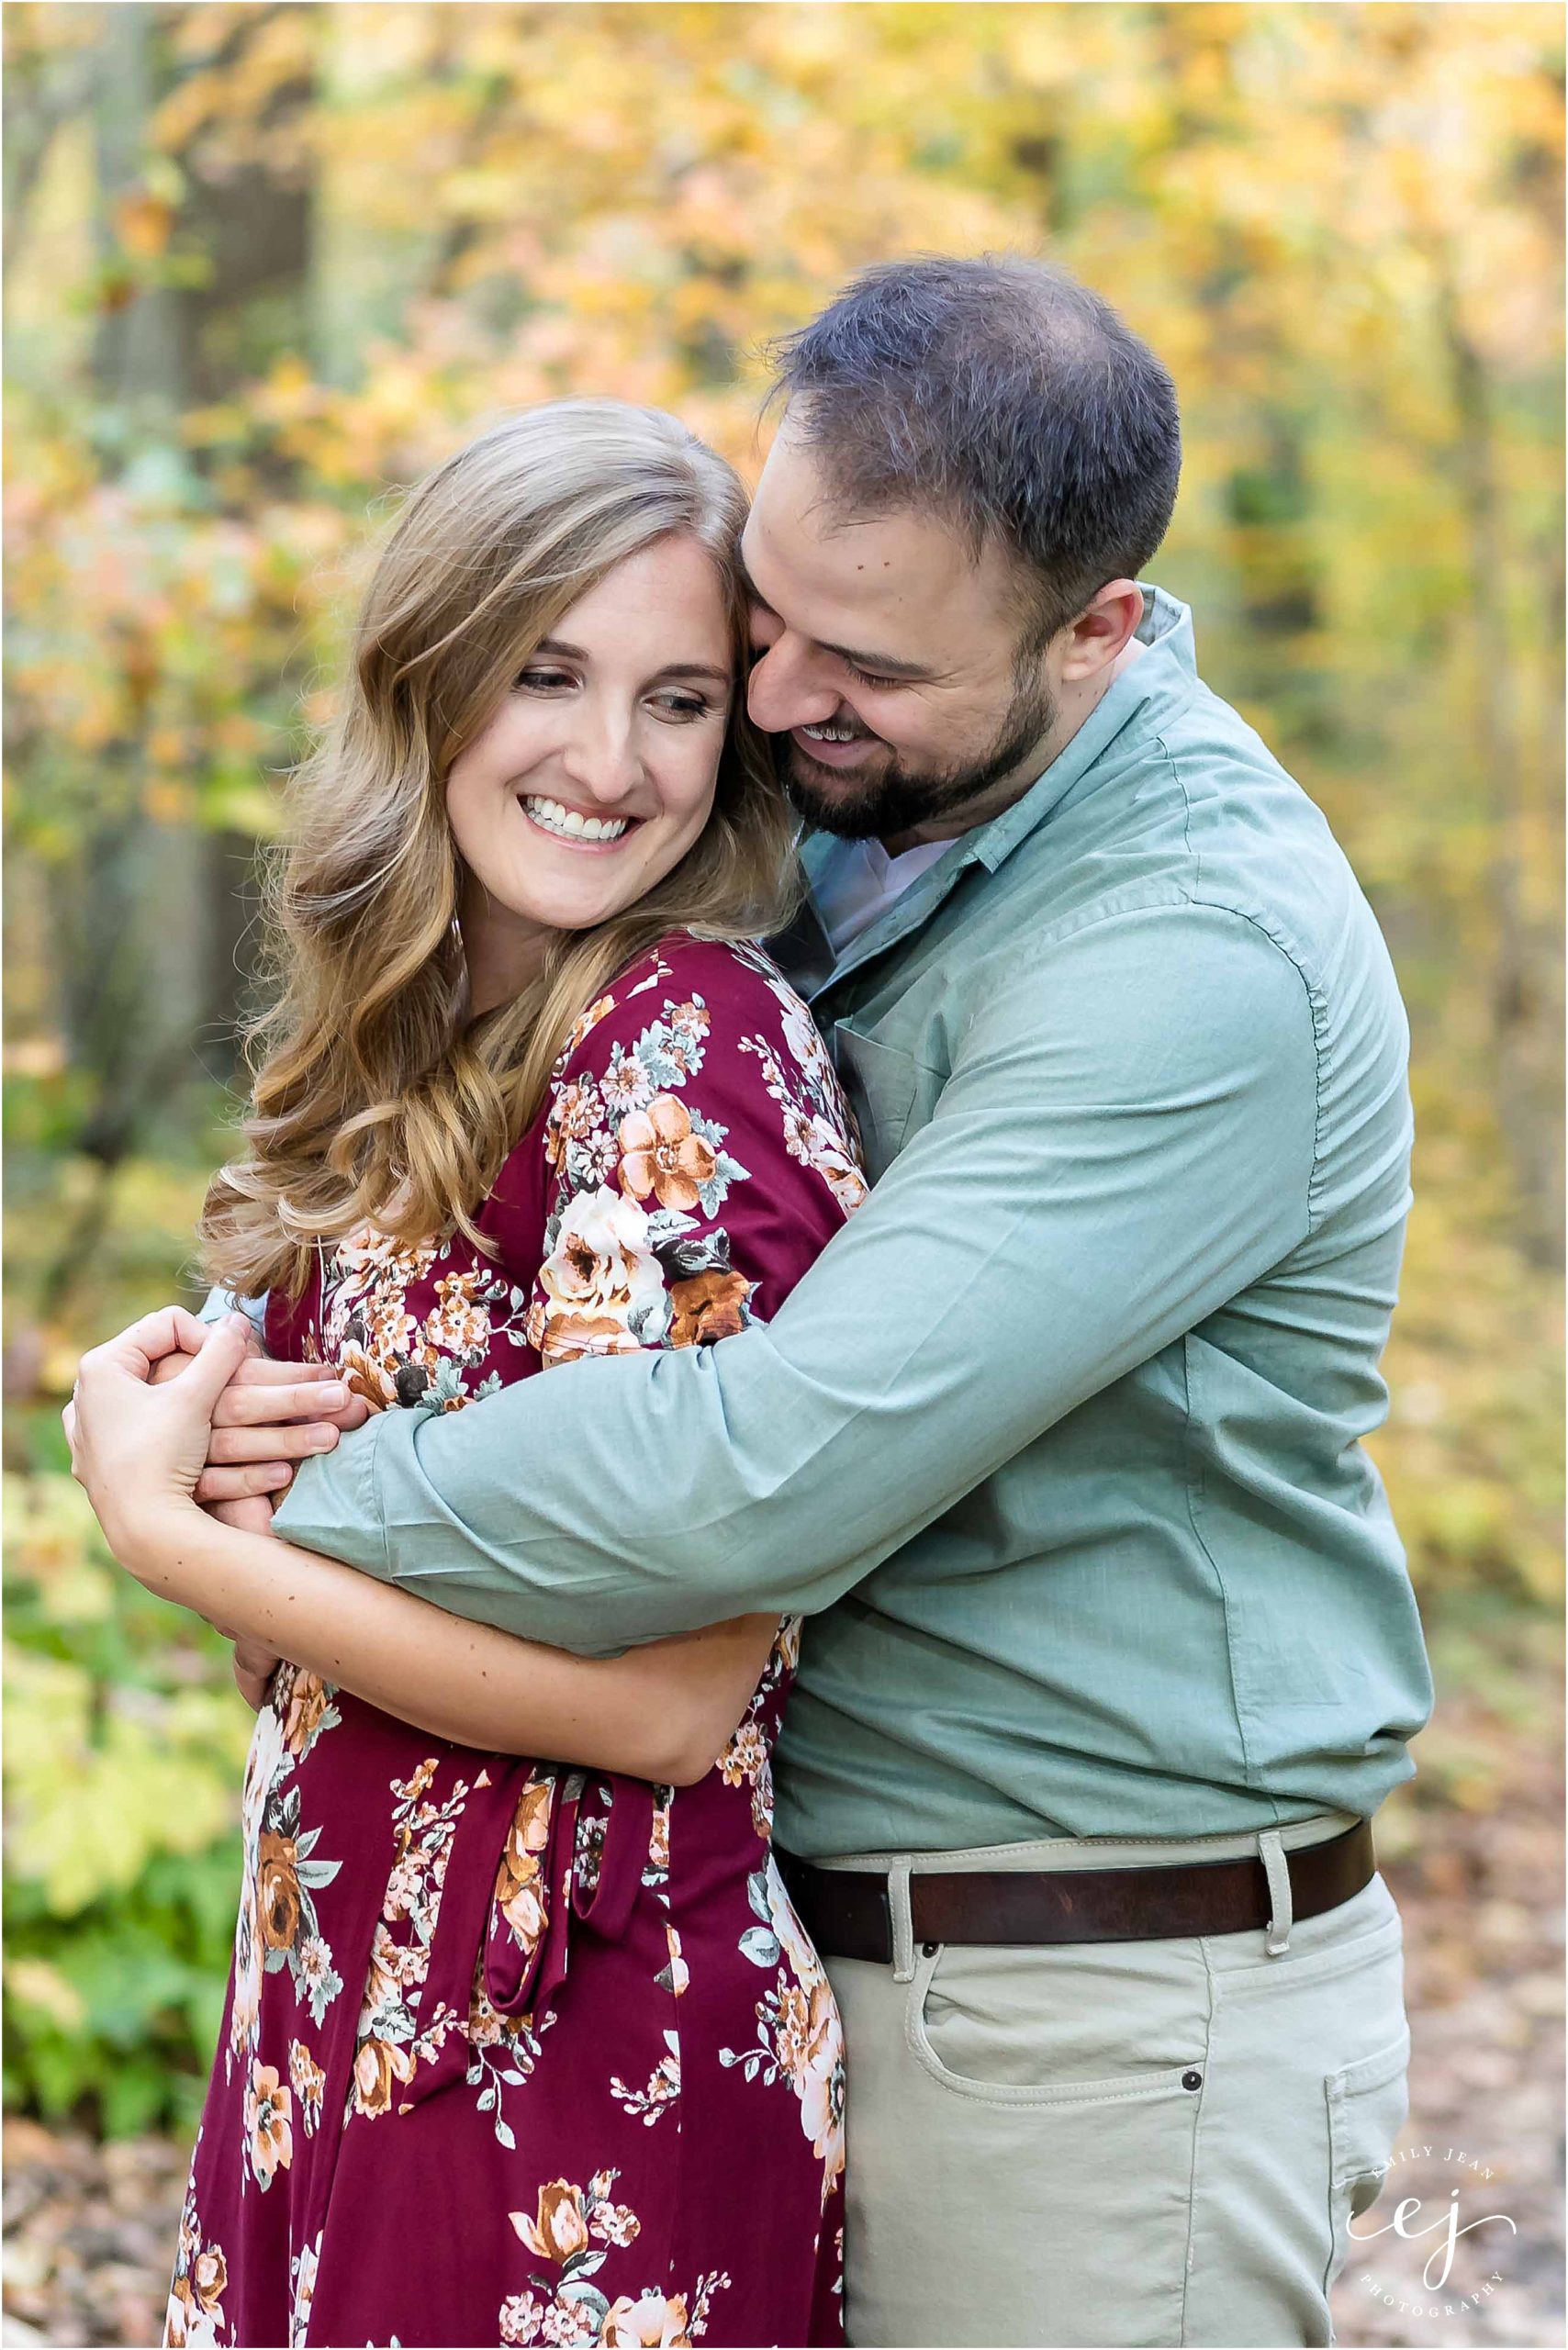 uw arboretum engagement session photographer wisconsin smiling hugging